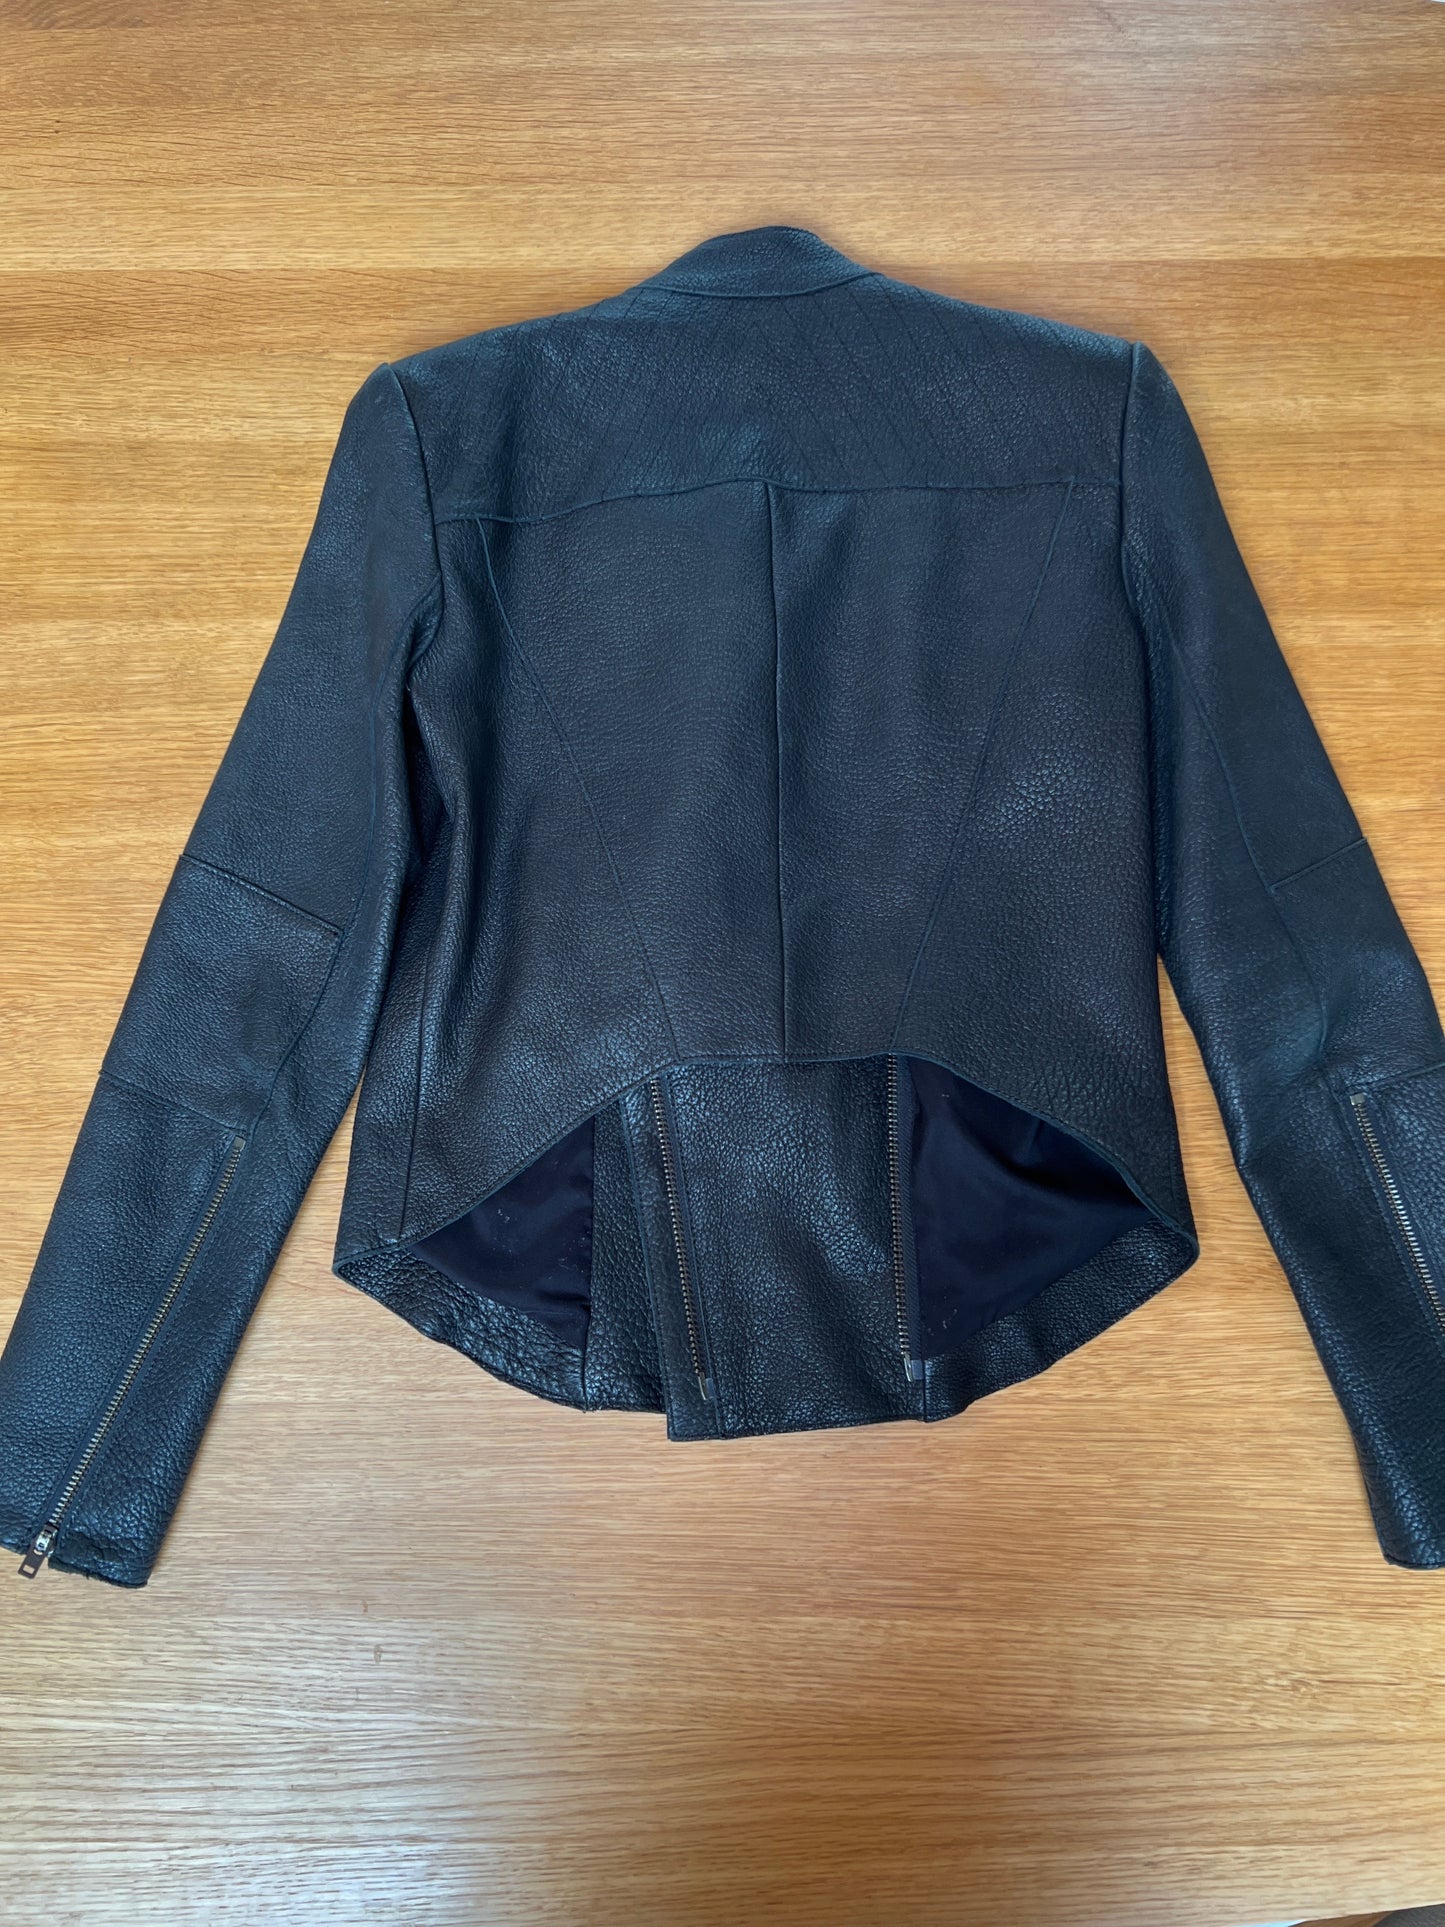 Black Leather Jacket - S